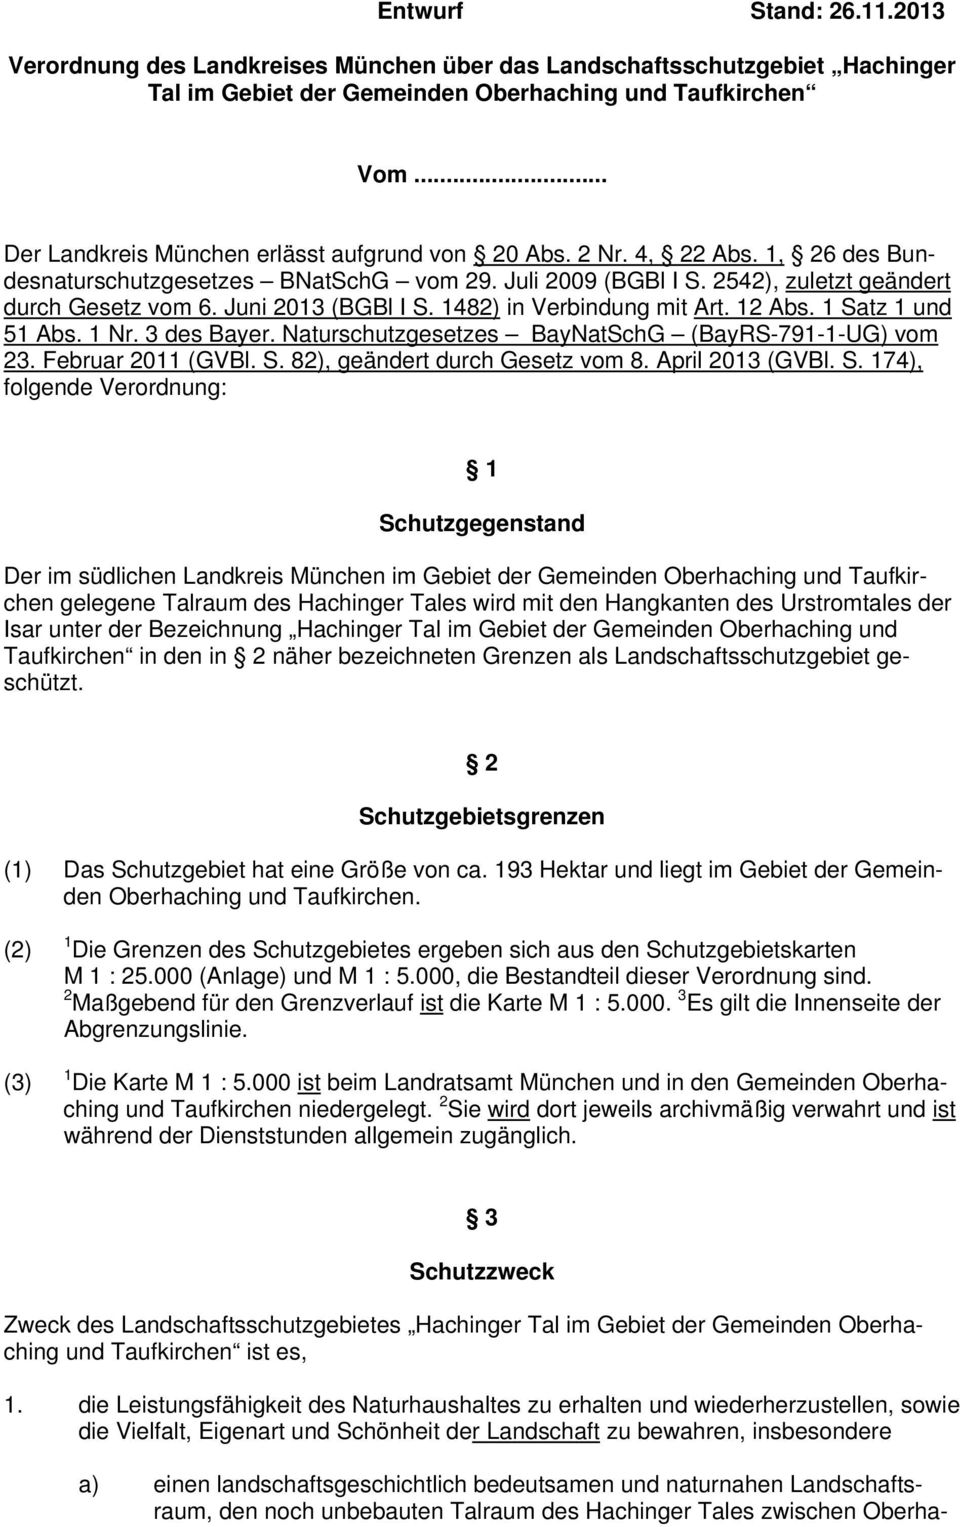 Juni 2013 (BGBl I S. 1482) in Verbindung mit Art. 12 Abs. 1 Satz 1 und 51 Abs. 1 Nr. 3 des Bayer. Naturschutzgesetzes BayNatSchG (BayRS-791-1-UG) vom 23. Februar 2011 (GVBl. S. 82), geändert durch Gesetz vom 8.